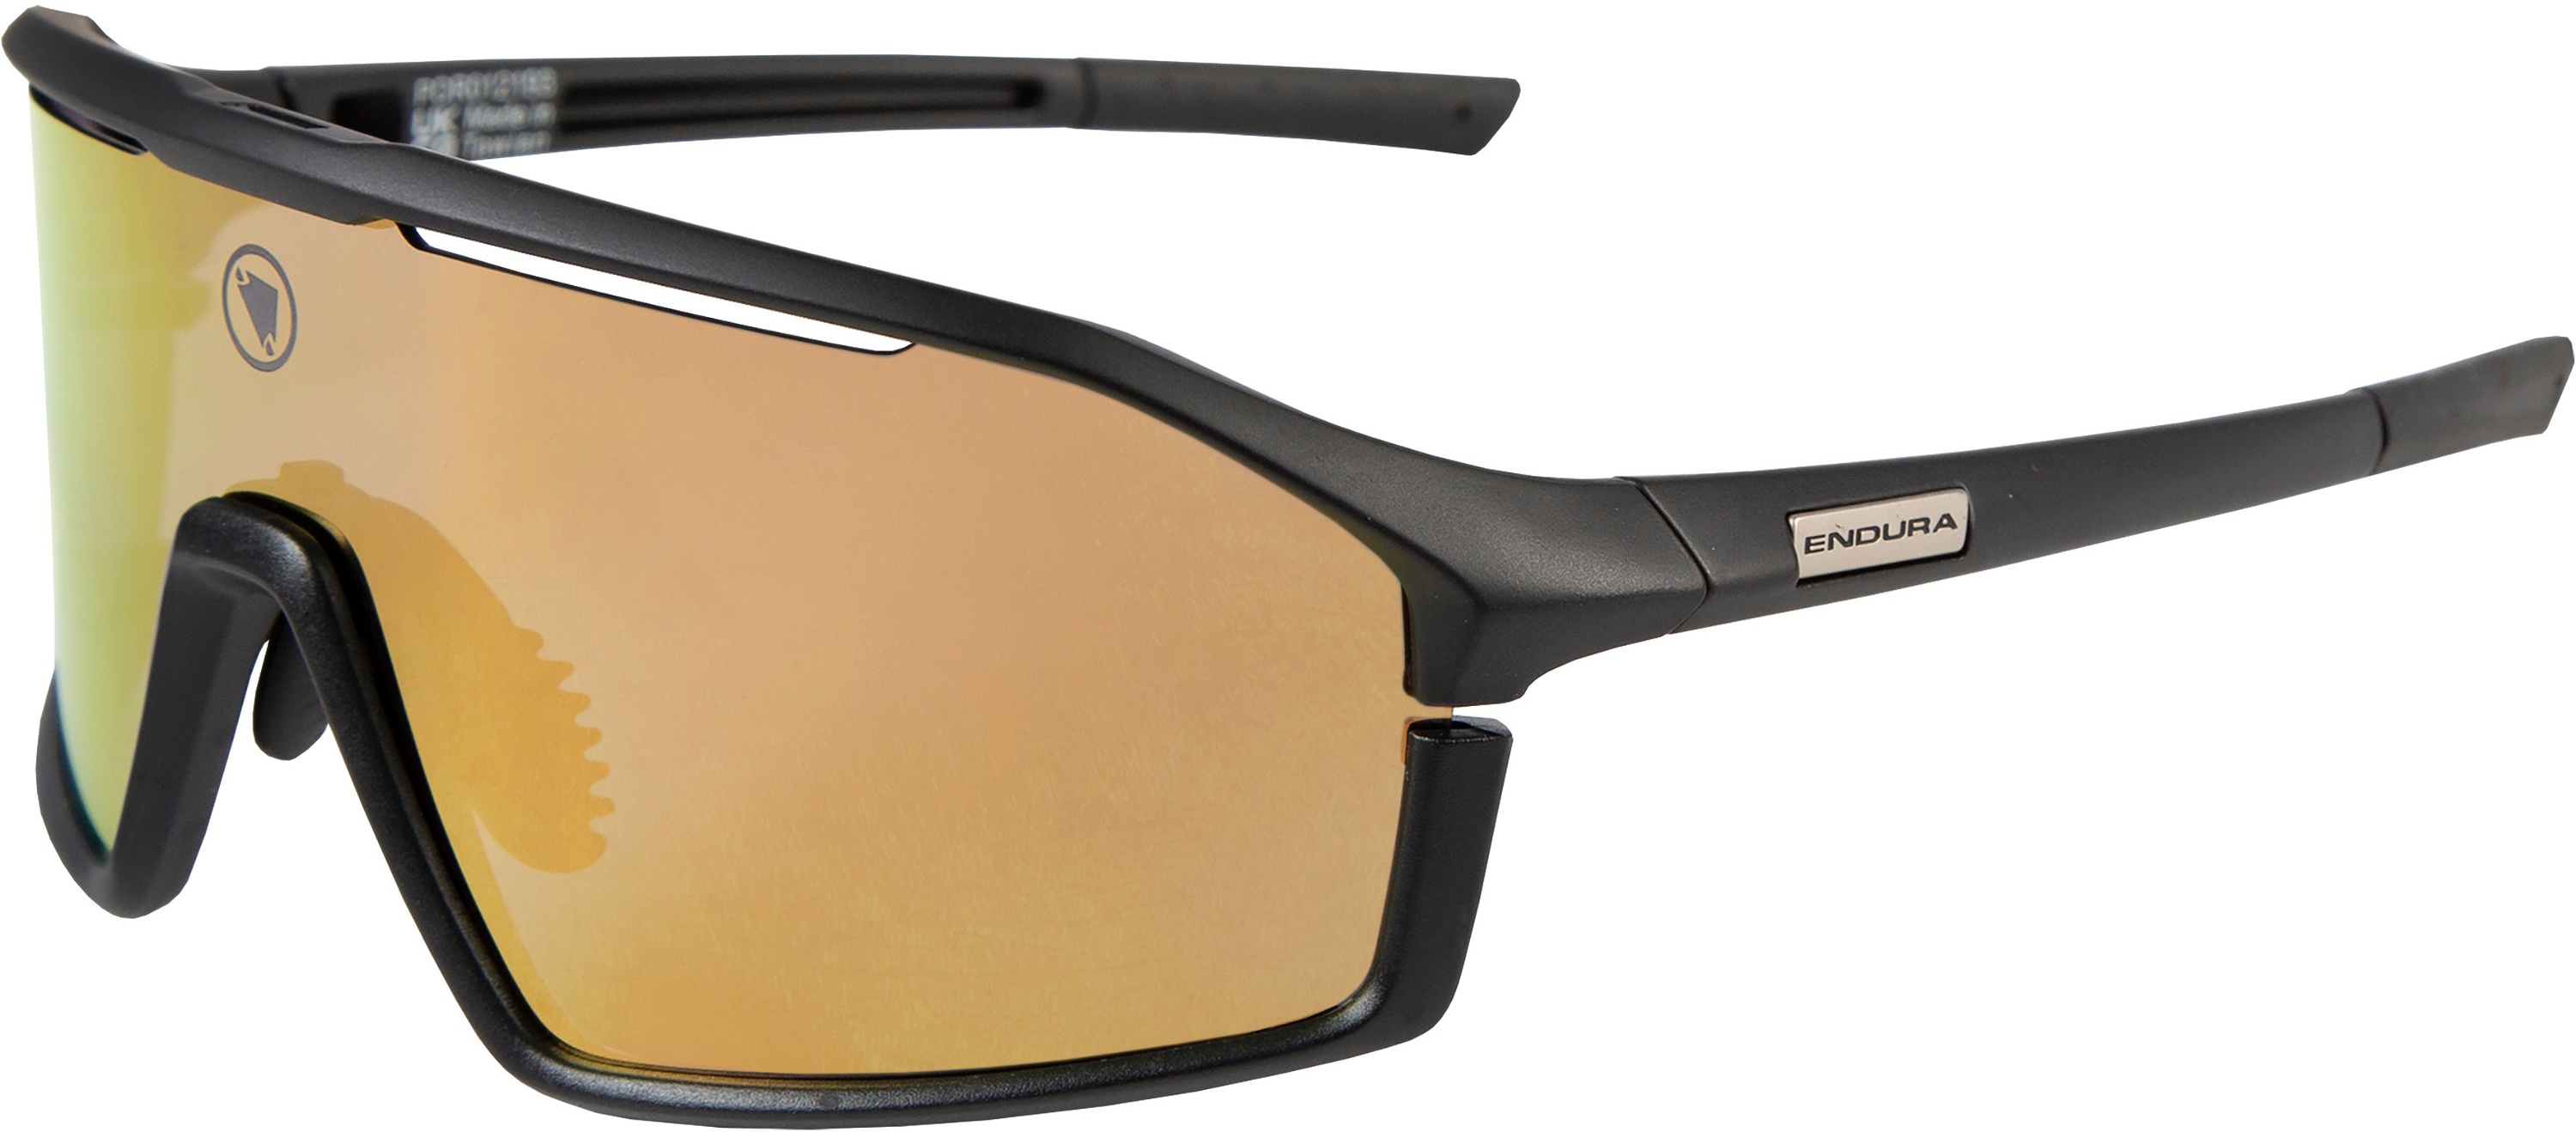 Beklædning - Cykelbriller - Endura Dorado II Glasses Set - Matt Black